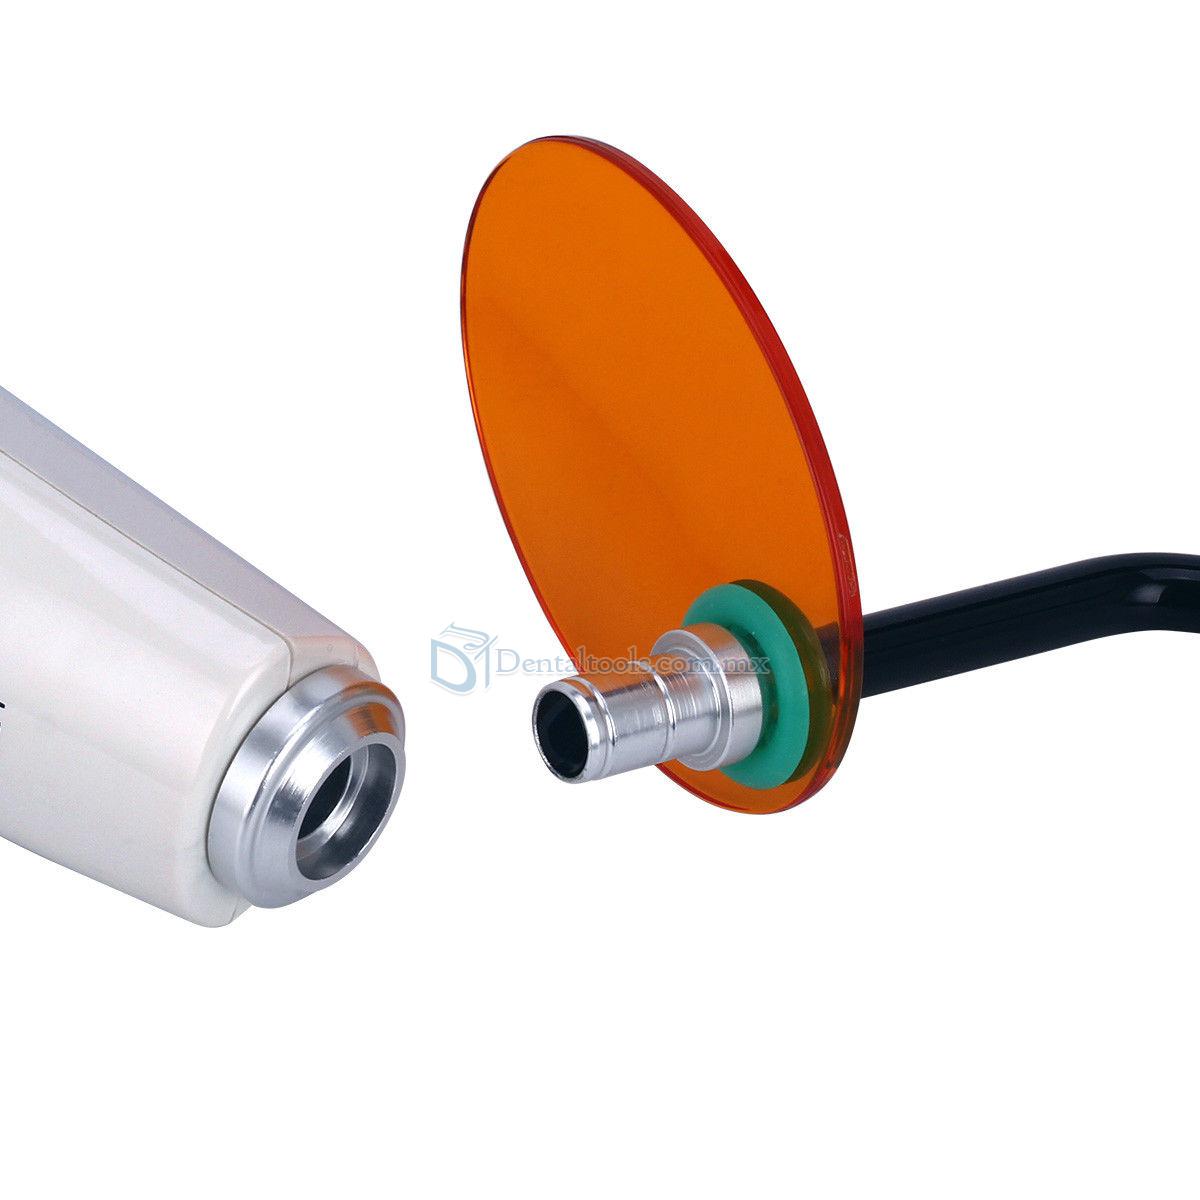 Dental Lampara de Fotocurado LED Inalámbrica con Medidor de Luz 2000mw/cm2